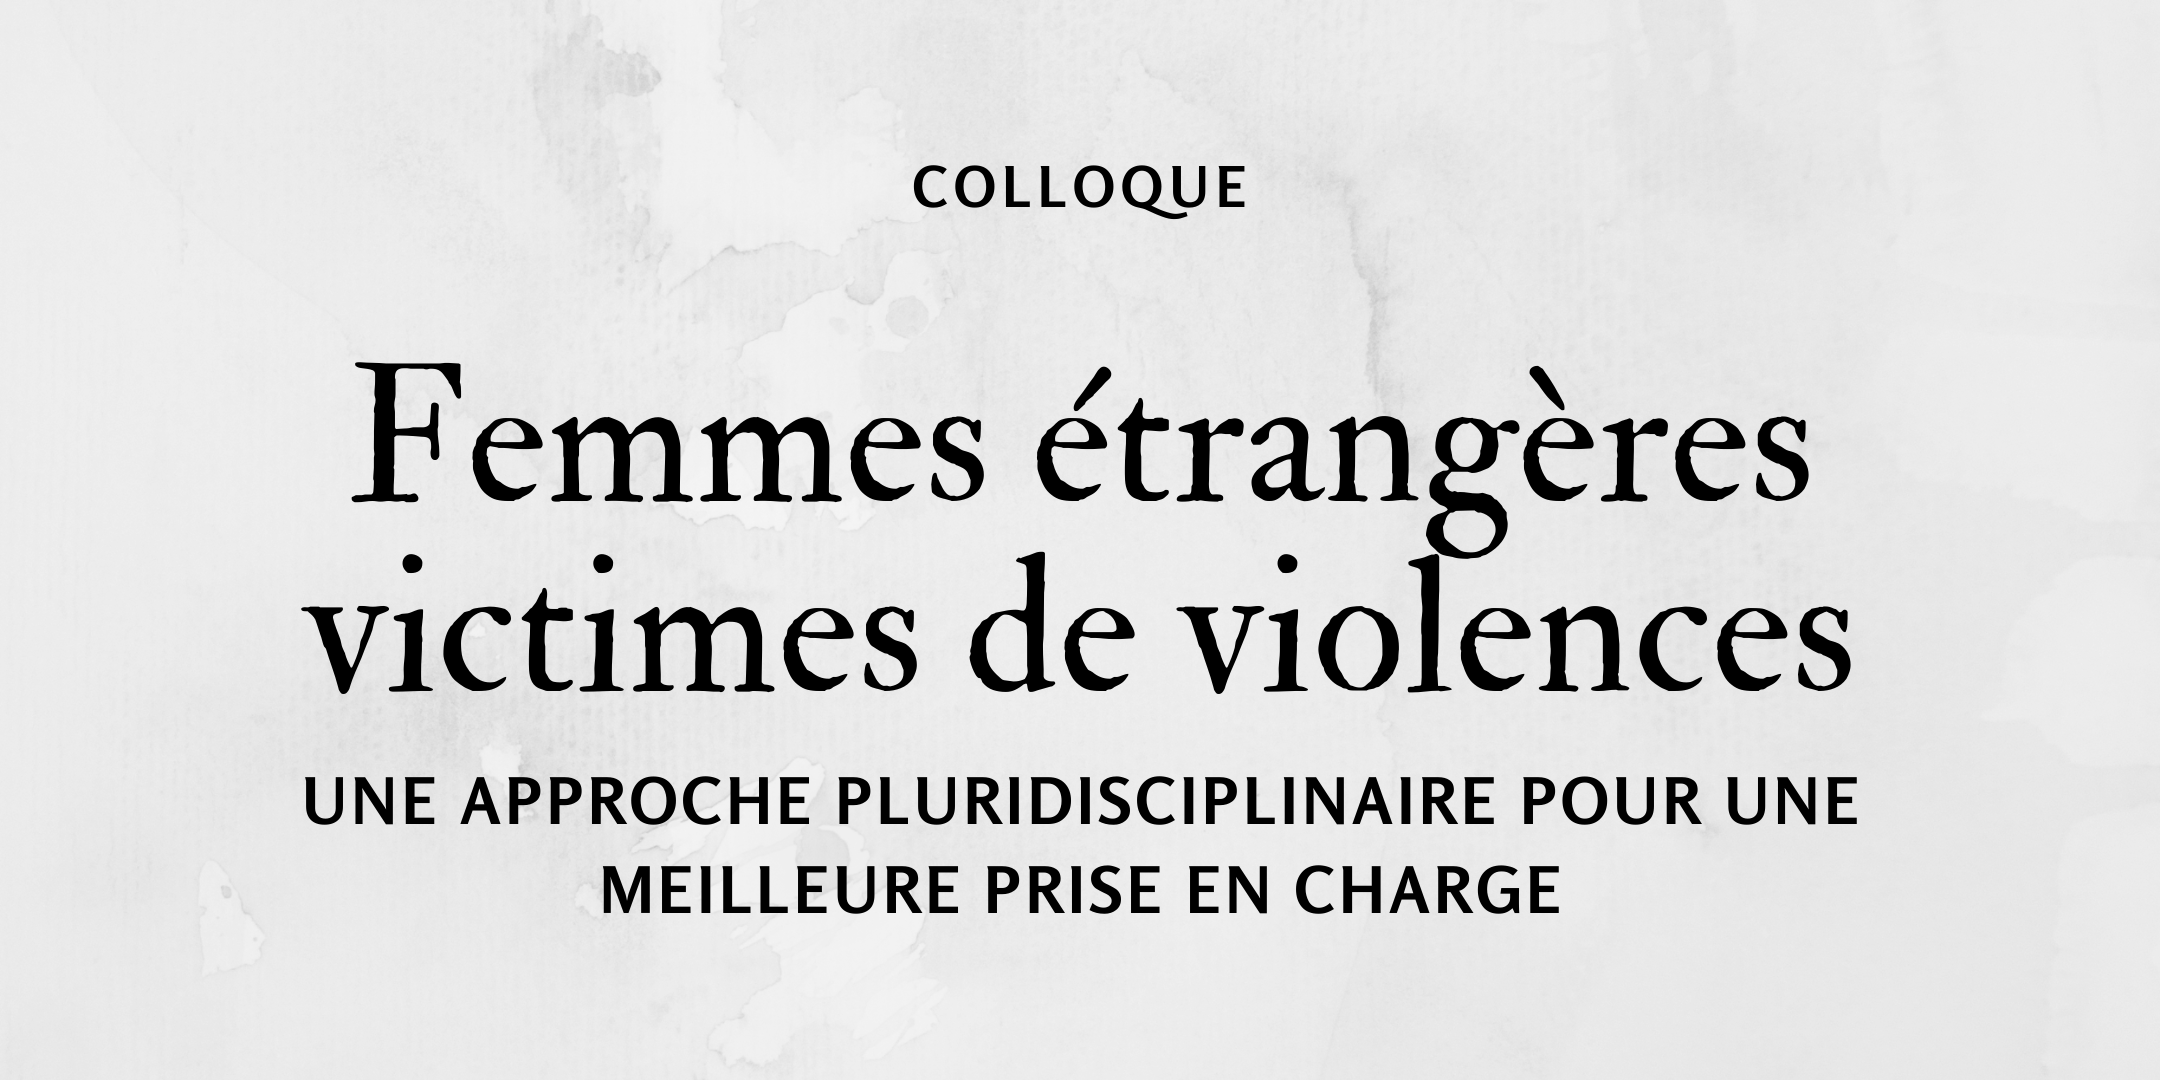 Colloque Femmes étrangères victimes de violences. Une approche pluridisciplinaire pour une meilleure prise en charge - 26 novembre 2020